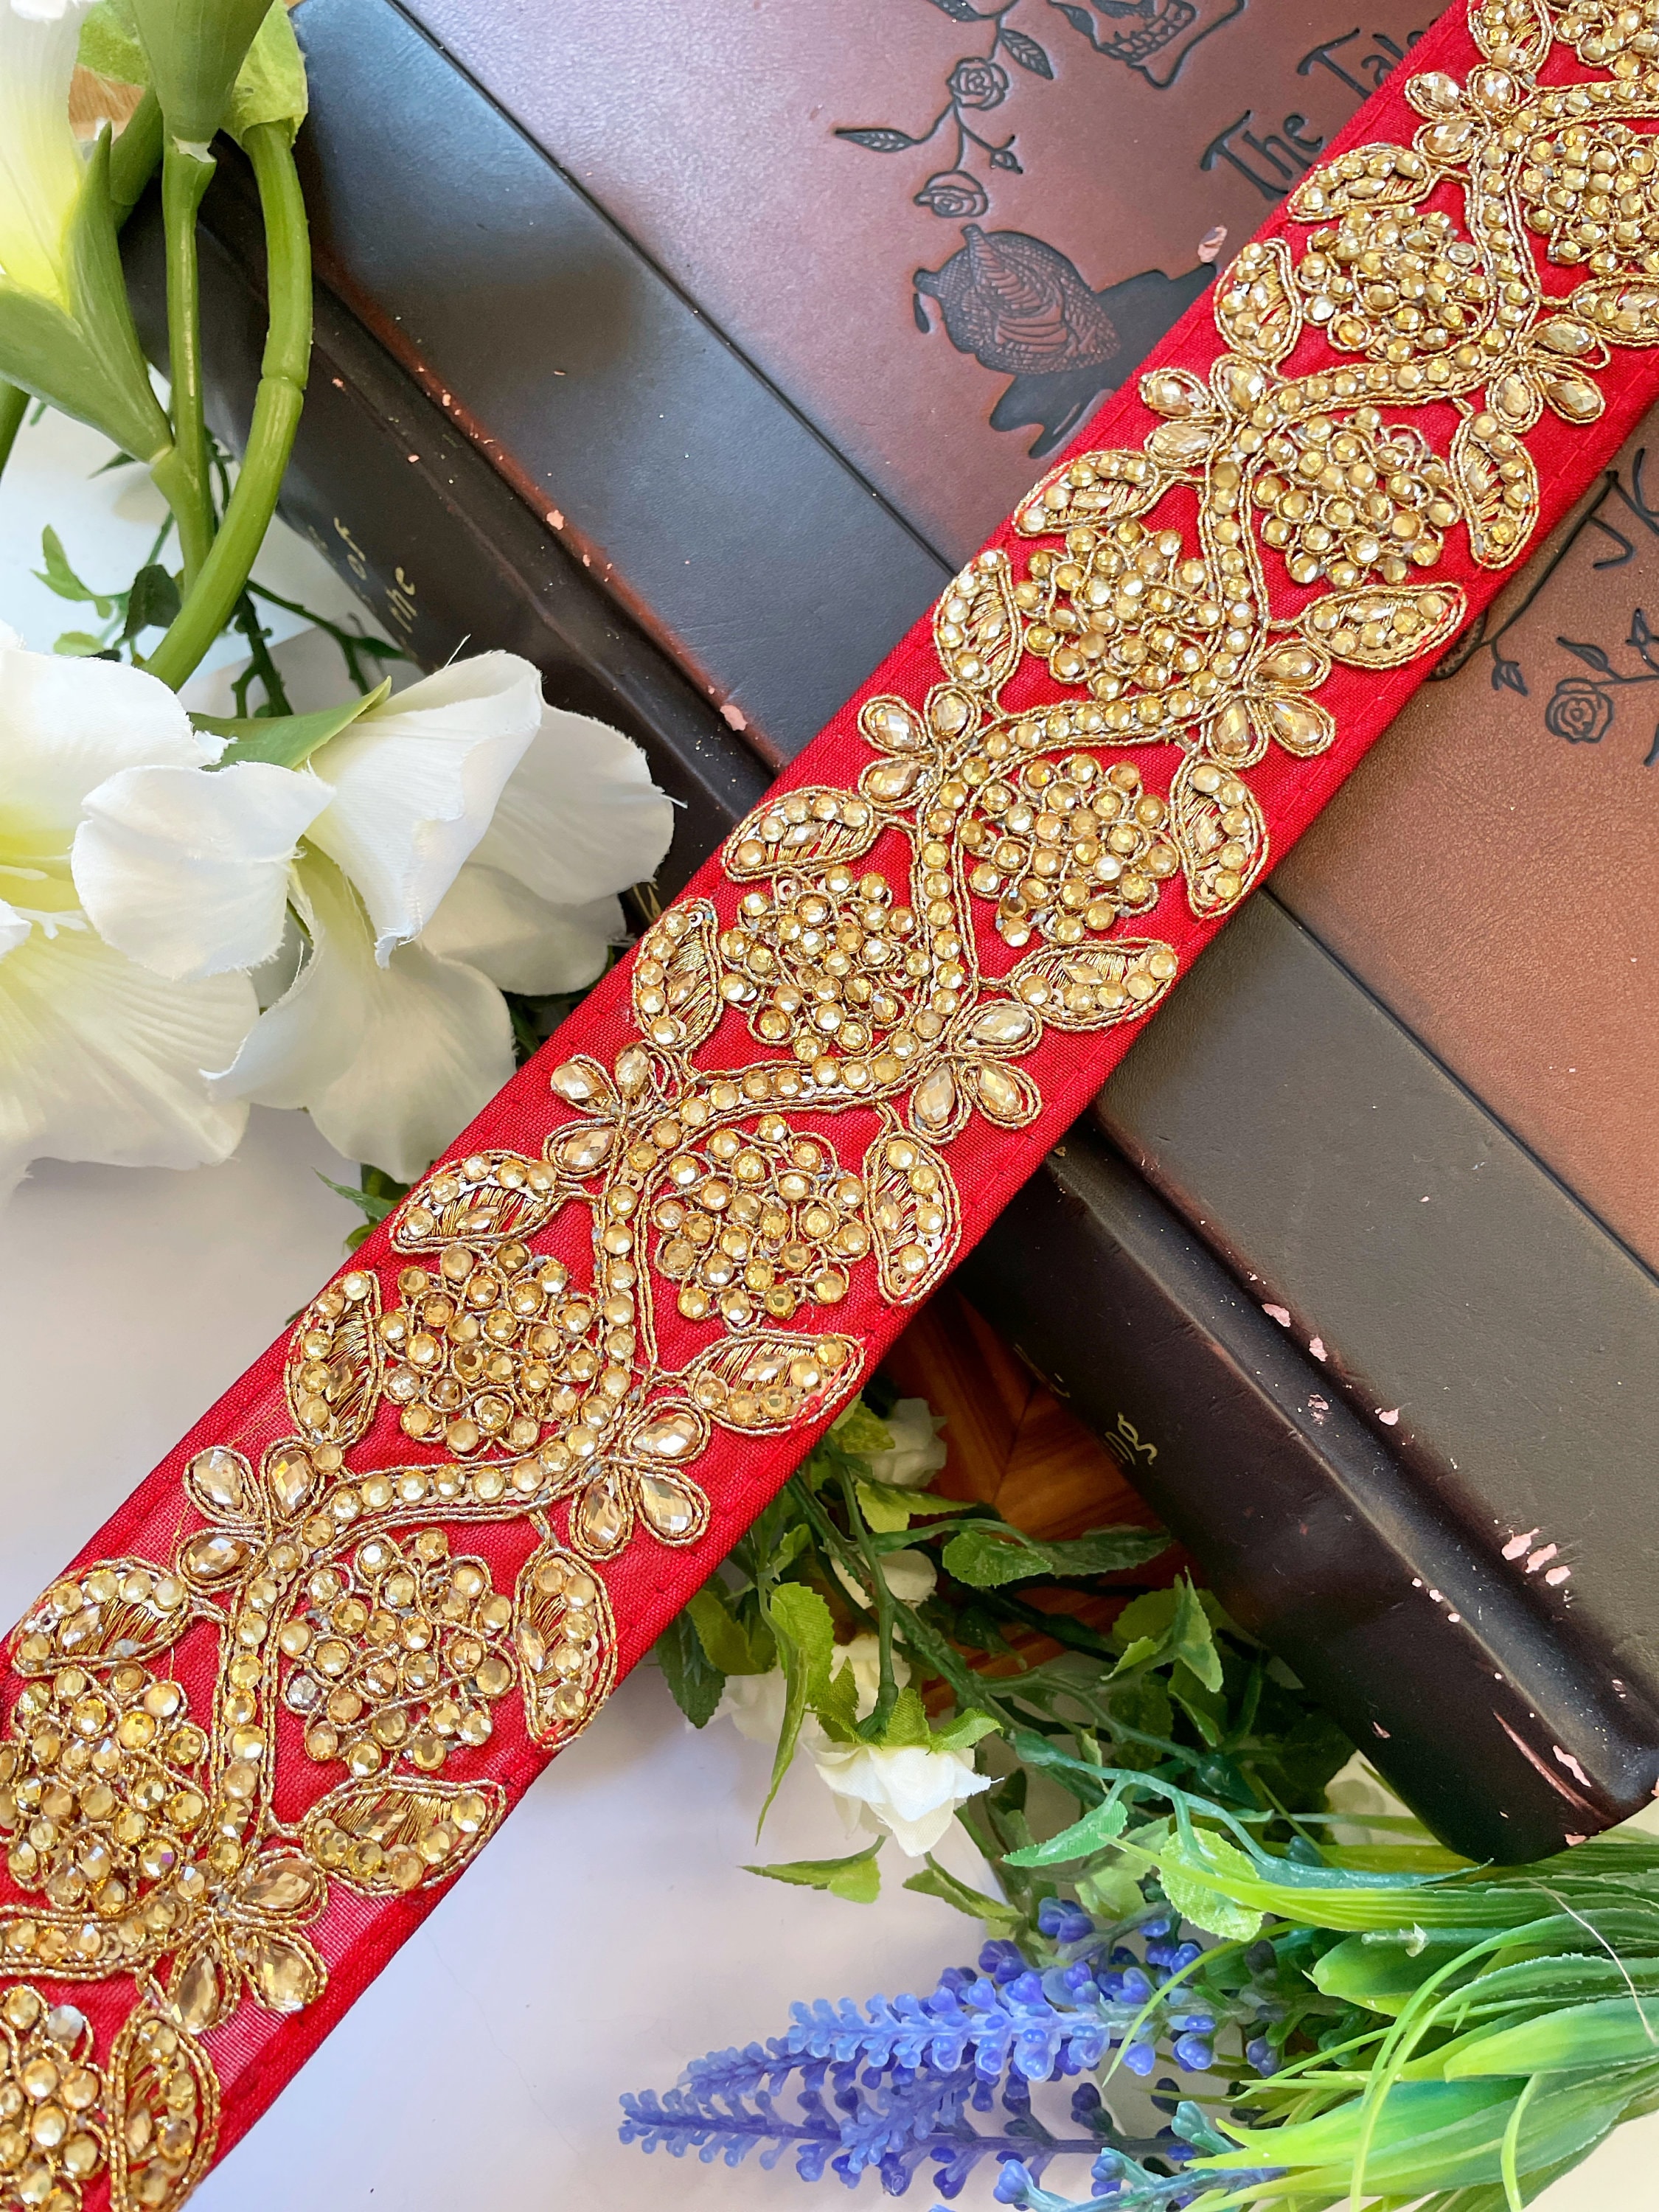 Ribbon Trim Bracelet Couture Robe Sac nuptiale décoration largeur 1.5 cm Argent